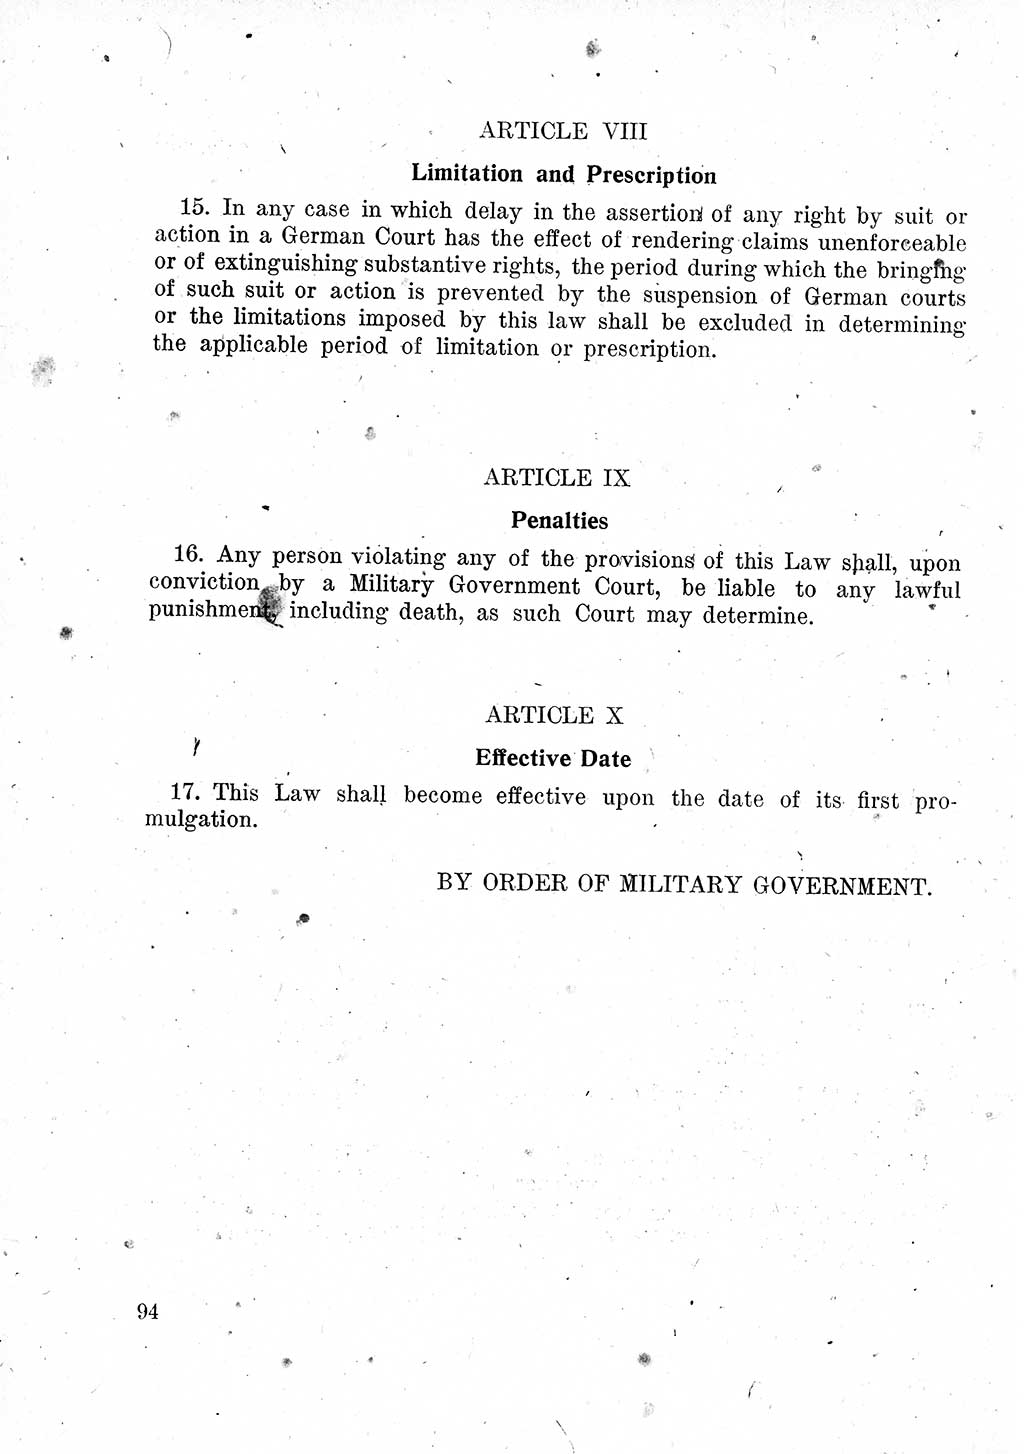 Das Recht der Besatzungsmacht (Deutschland), Proklamationen, Deklerationen, Verordnungen, Gesetze und Bekanntmachungen 1947, Seite 94 (R. Bes. Dtl. 1947, S. 94)